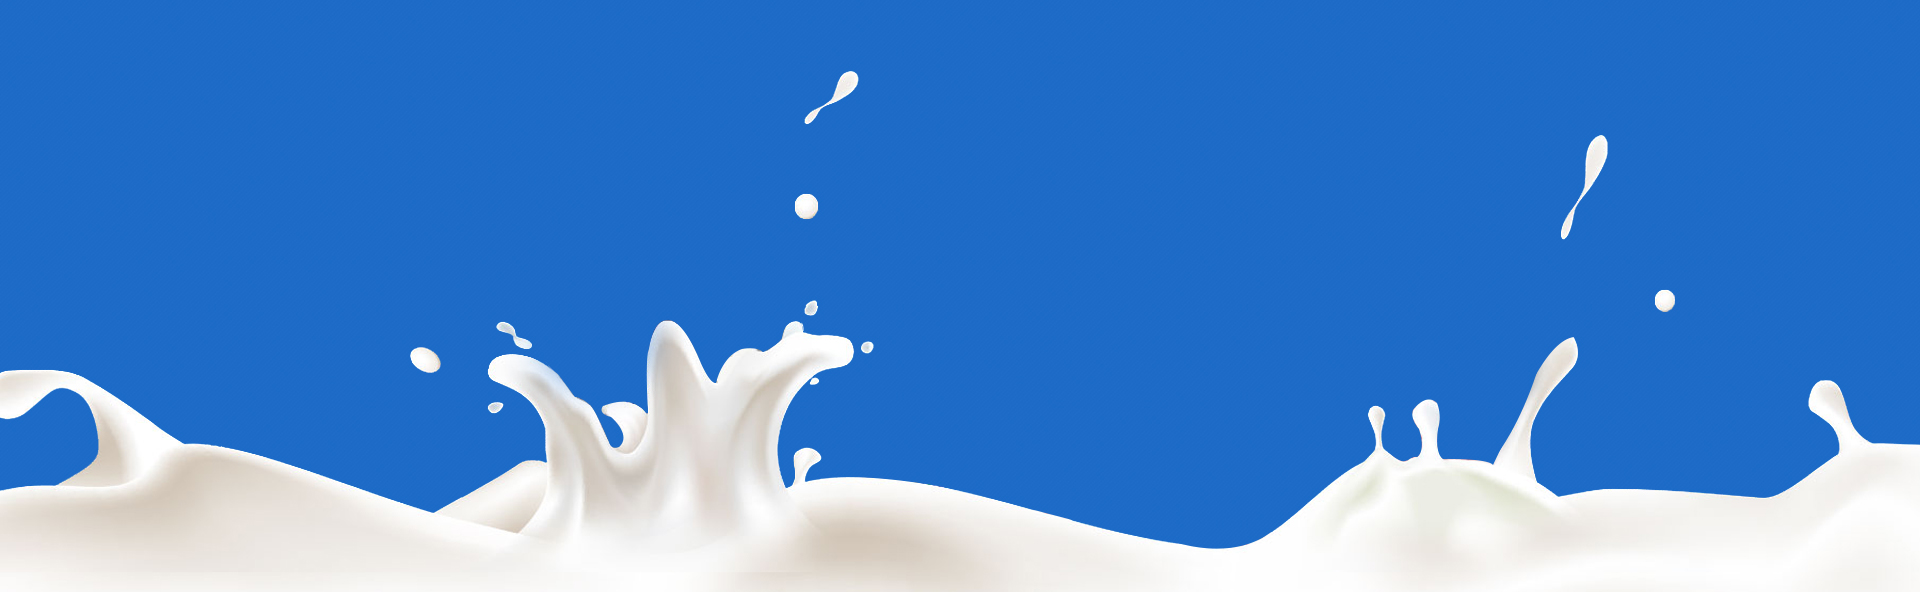 우유 벽지,푸른,물,하늘,삽화,우유